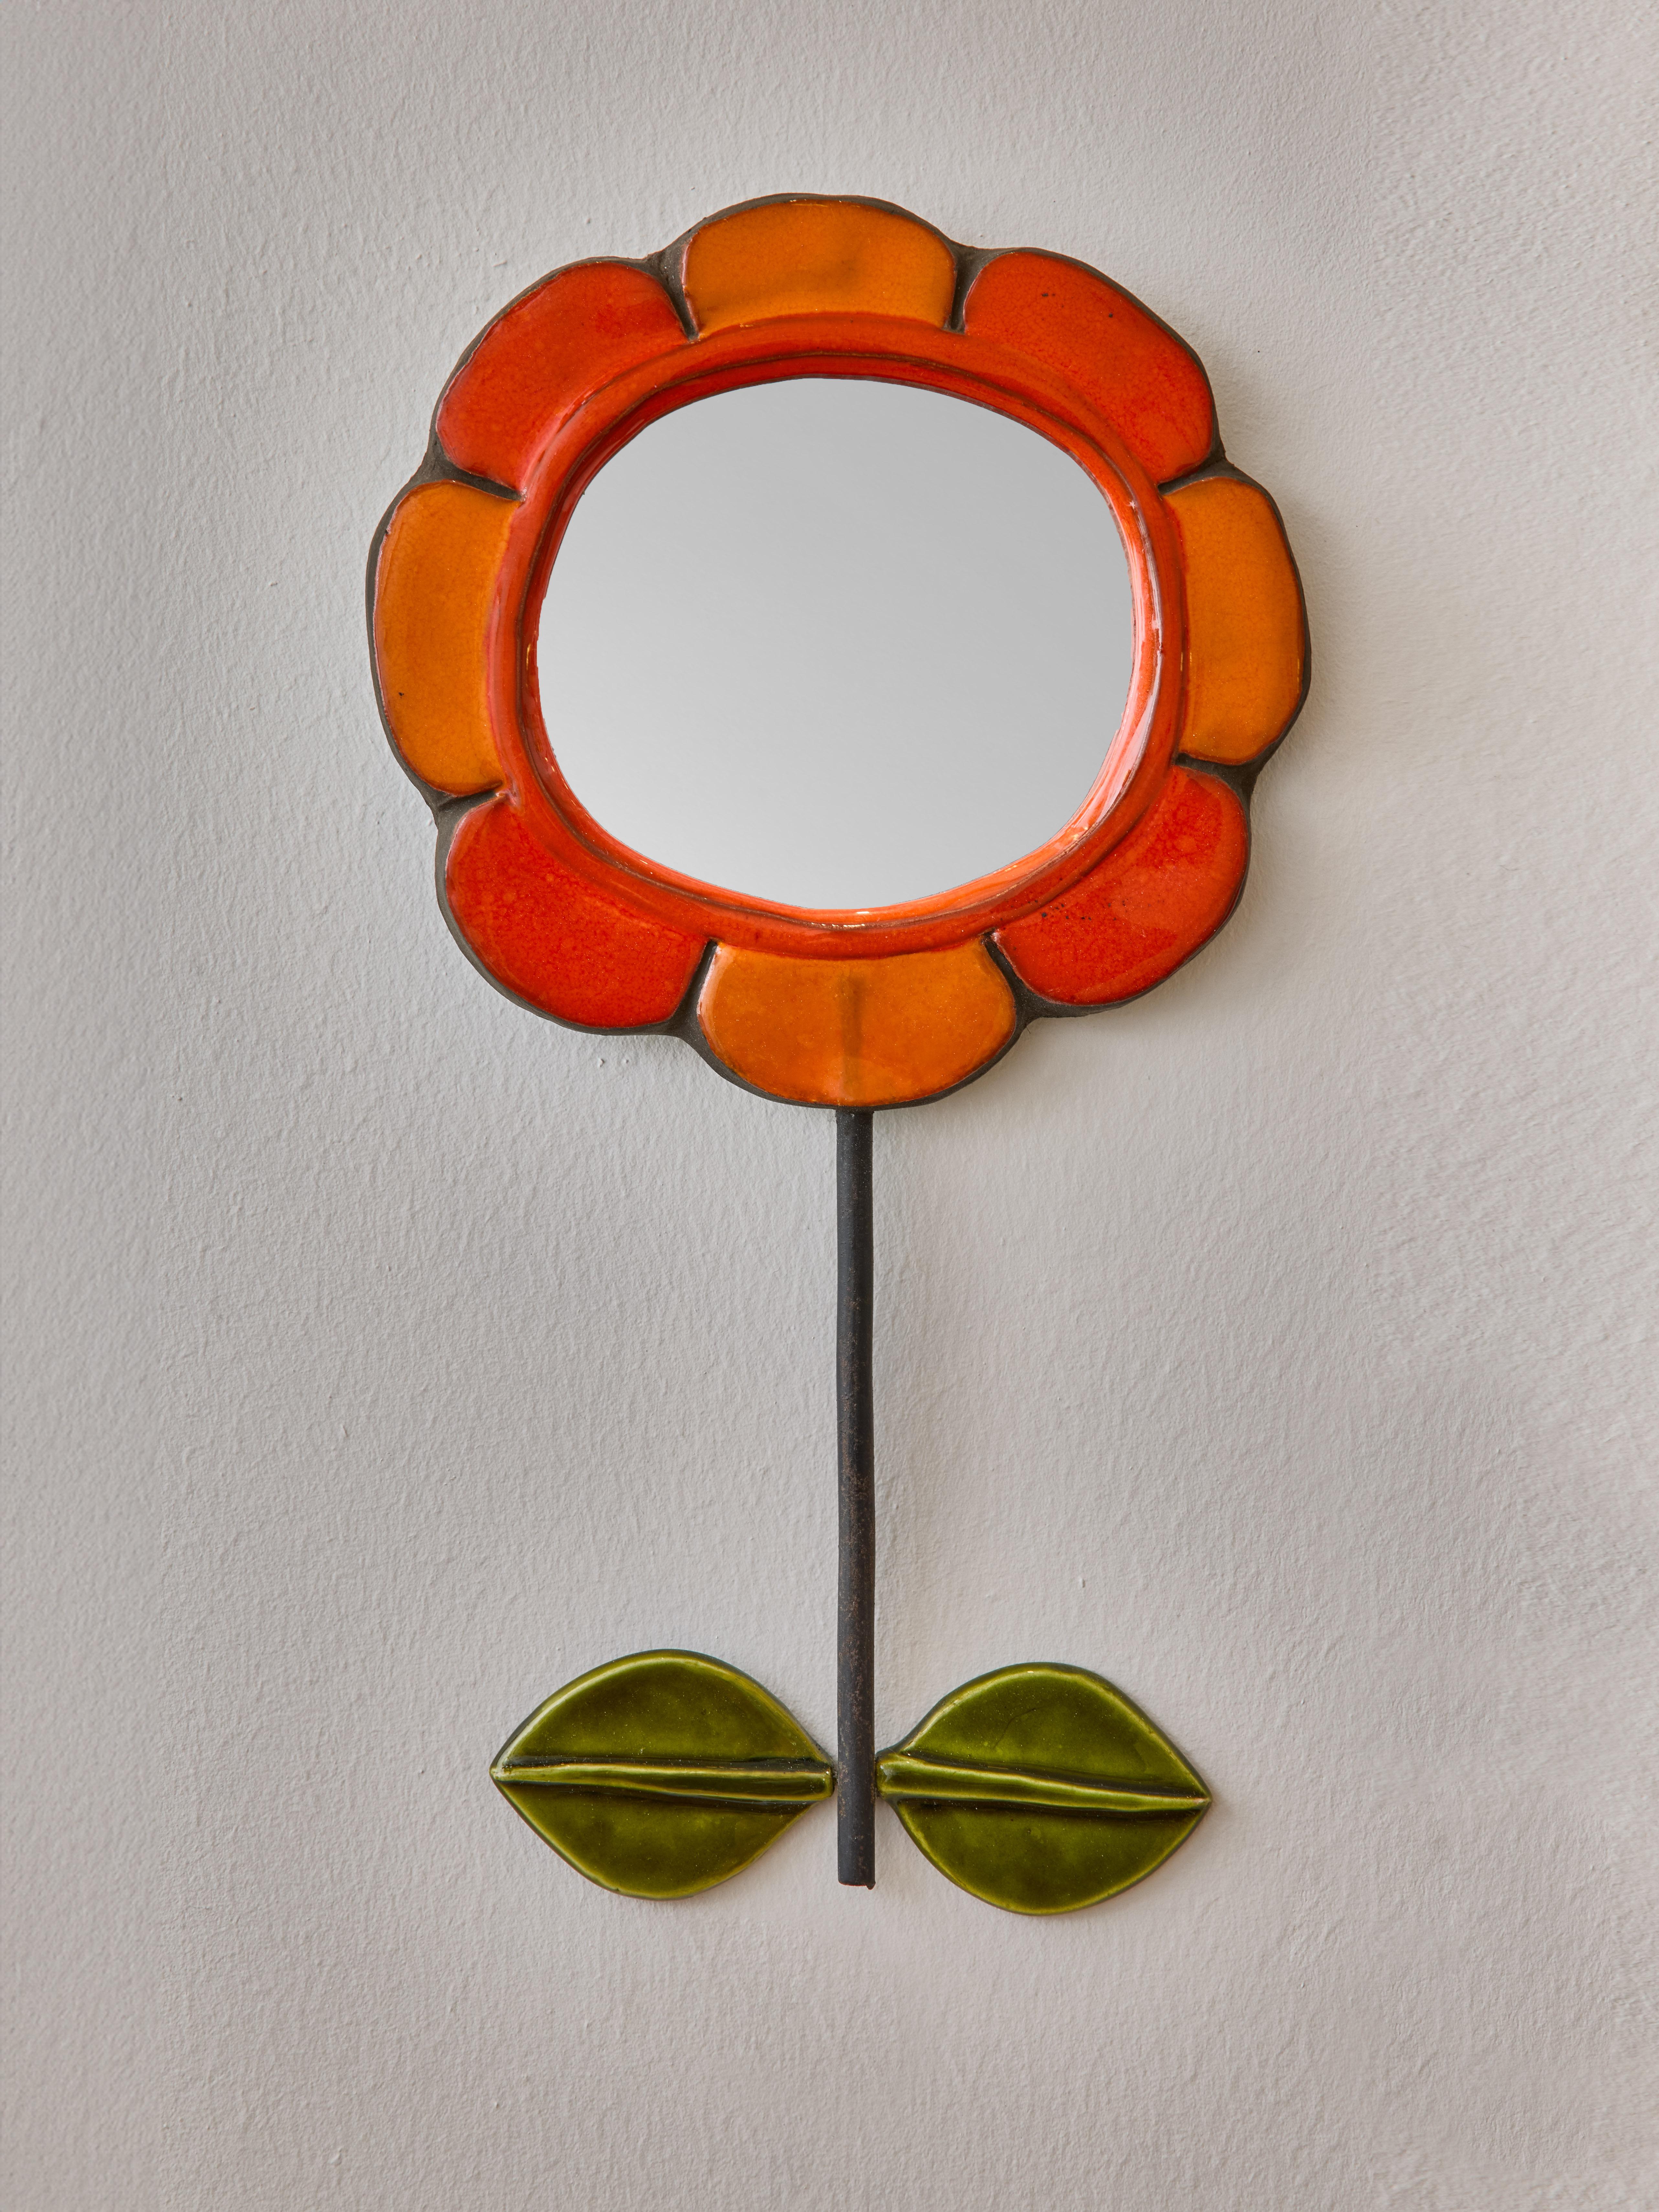 Spiegel aus Keramik in Form einer Blume mit orangefarbenen Blütenblättern. Vertikaler Metallstiel, an dem zwei grün gefärbte Keramikblätter befestigt sind. Hergestellt von Mithé Espelt.

 

Marie Thérèse Espelt, alias. Mithé Espelt (1923-2020)

